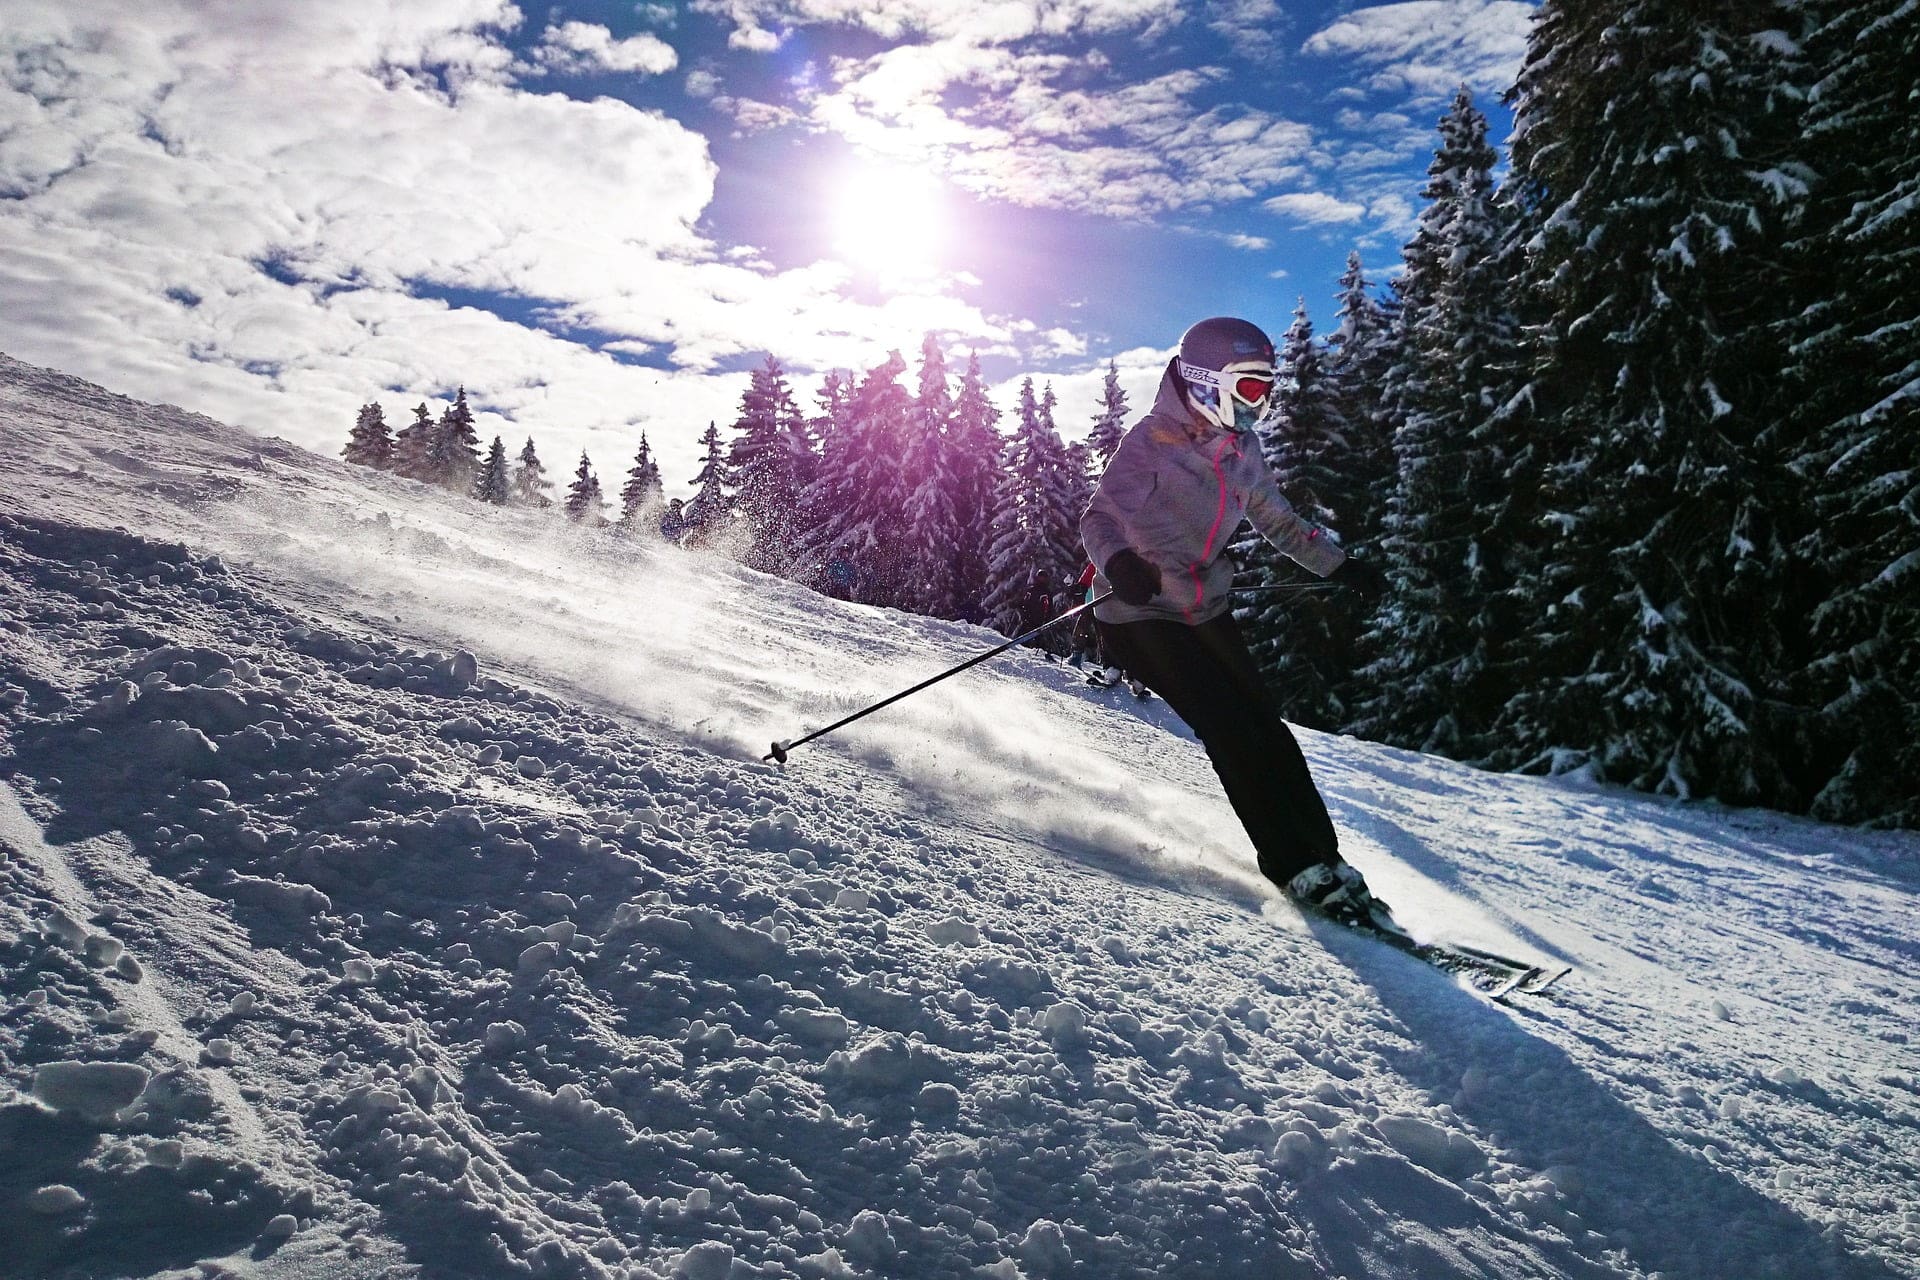 Raisons pour lesquelles les gens voyagent - ski alpin